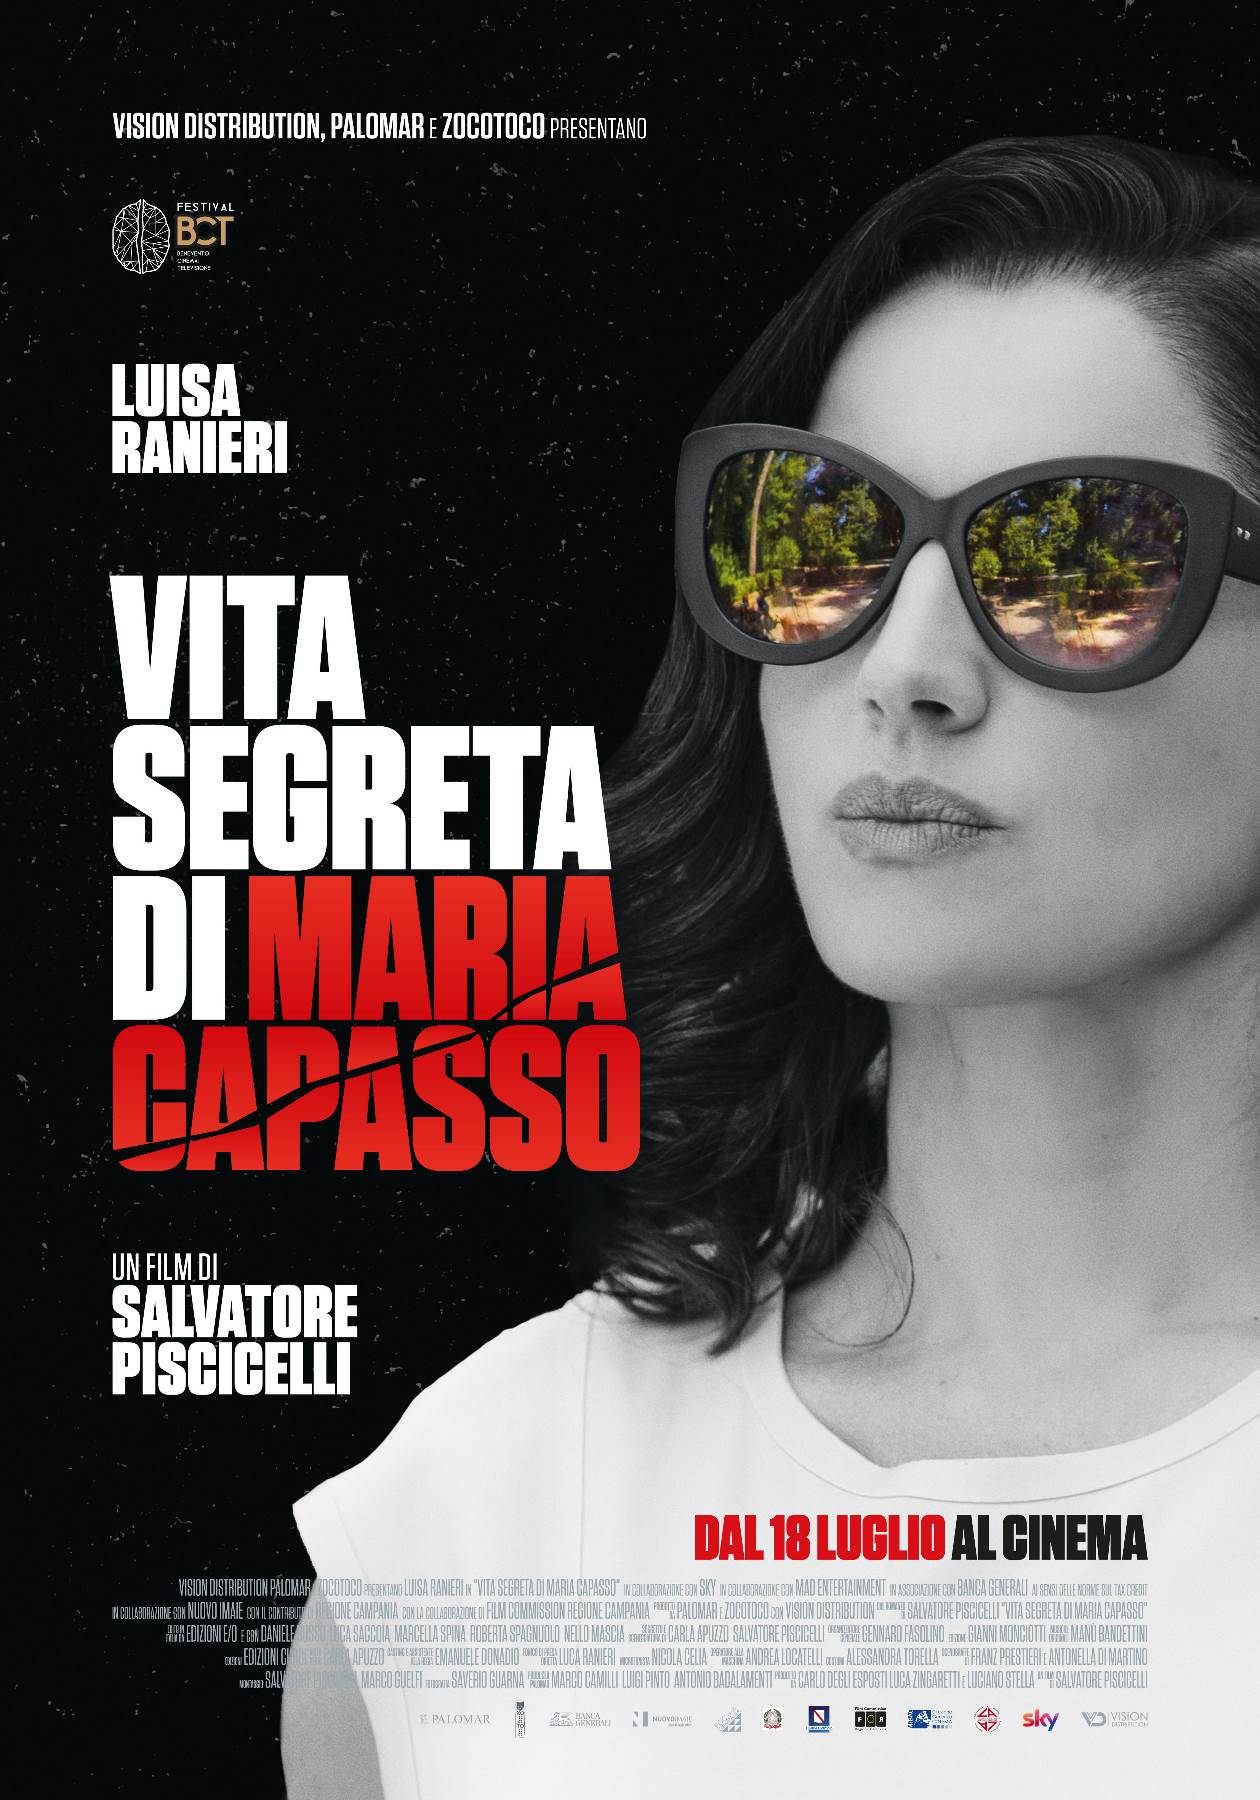 Vita segreta di Maria Capasso, trailer ufficiale